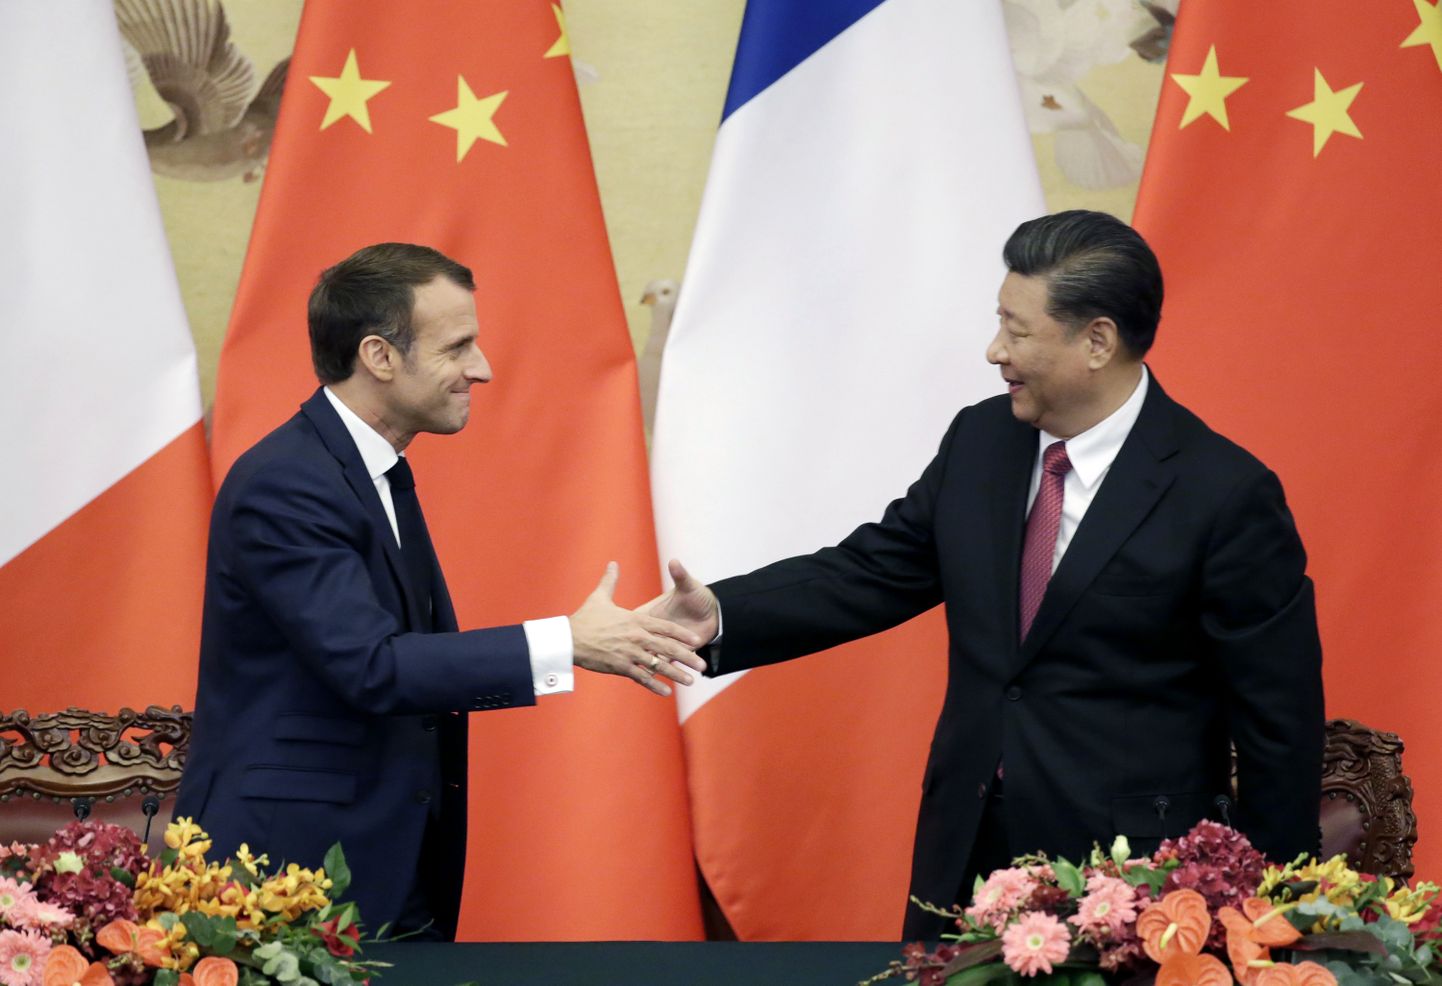 Prantsuse president Emmanuel Macron ja Hiina liider Xi Jinping Pekingis.